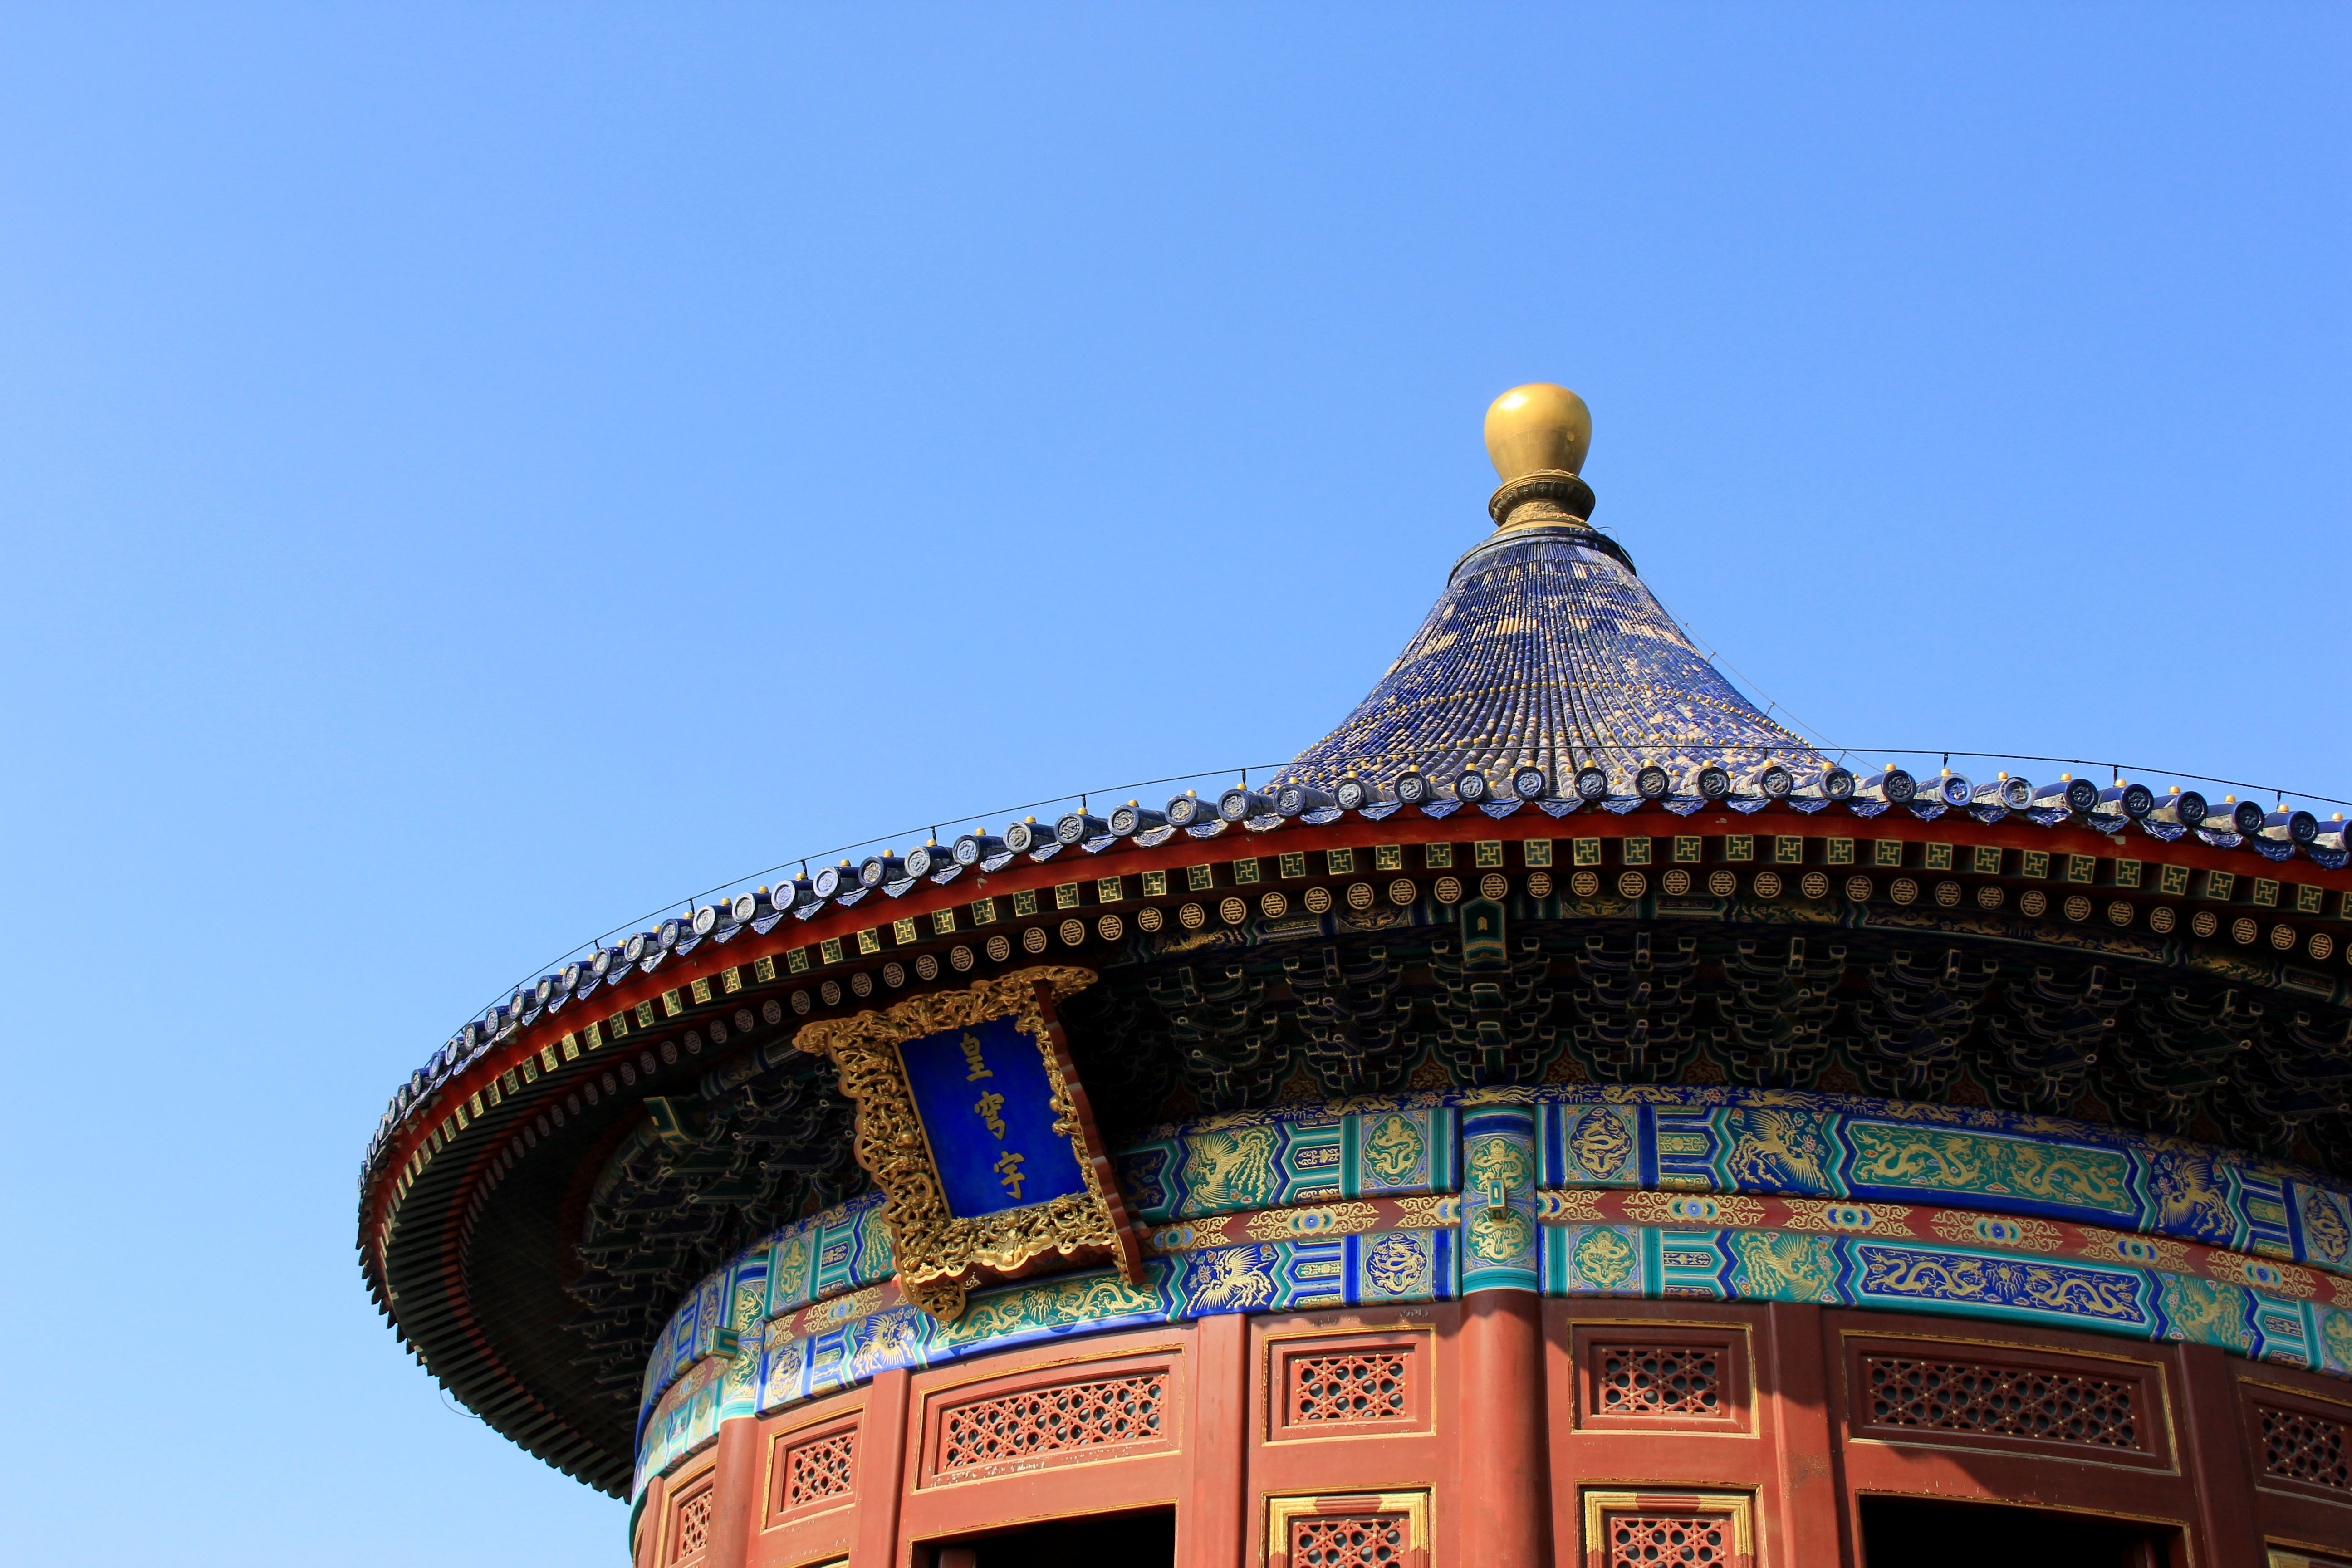 中国5a级旅游景区和世界文化遗址的北京天坛公园美景